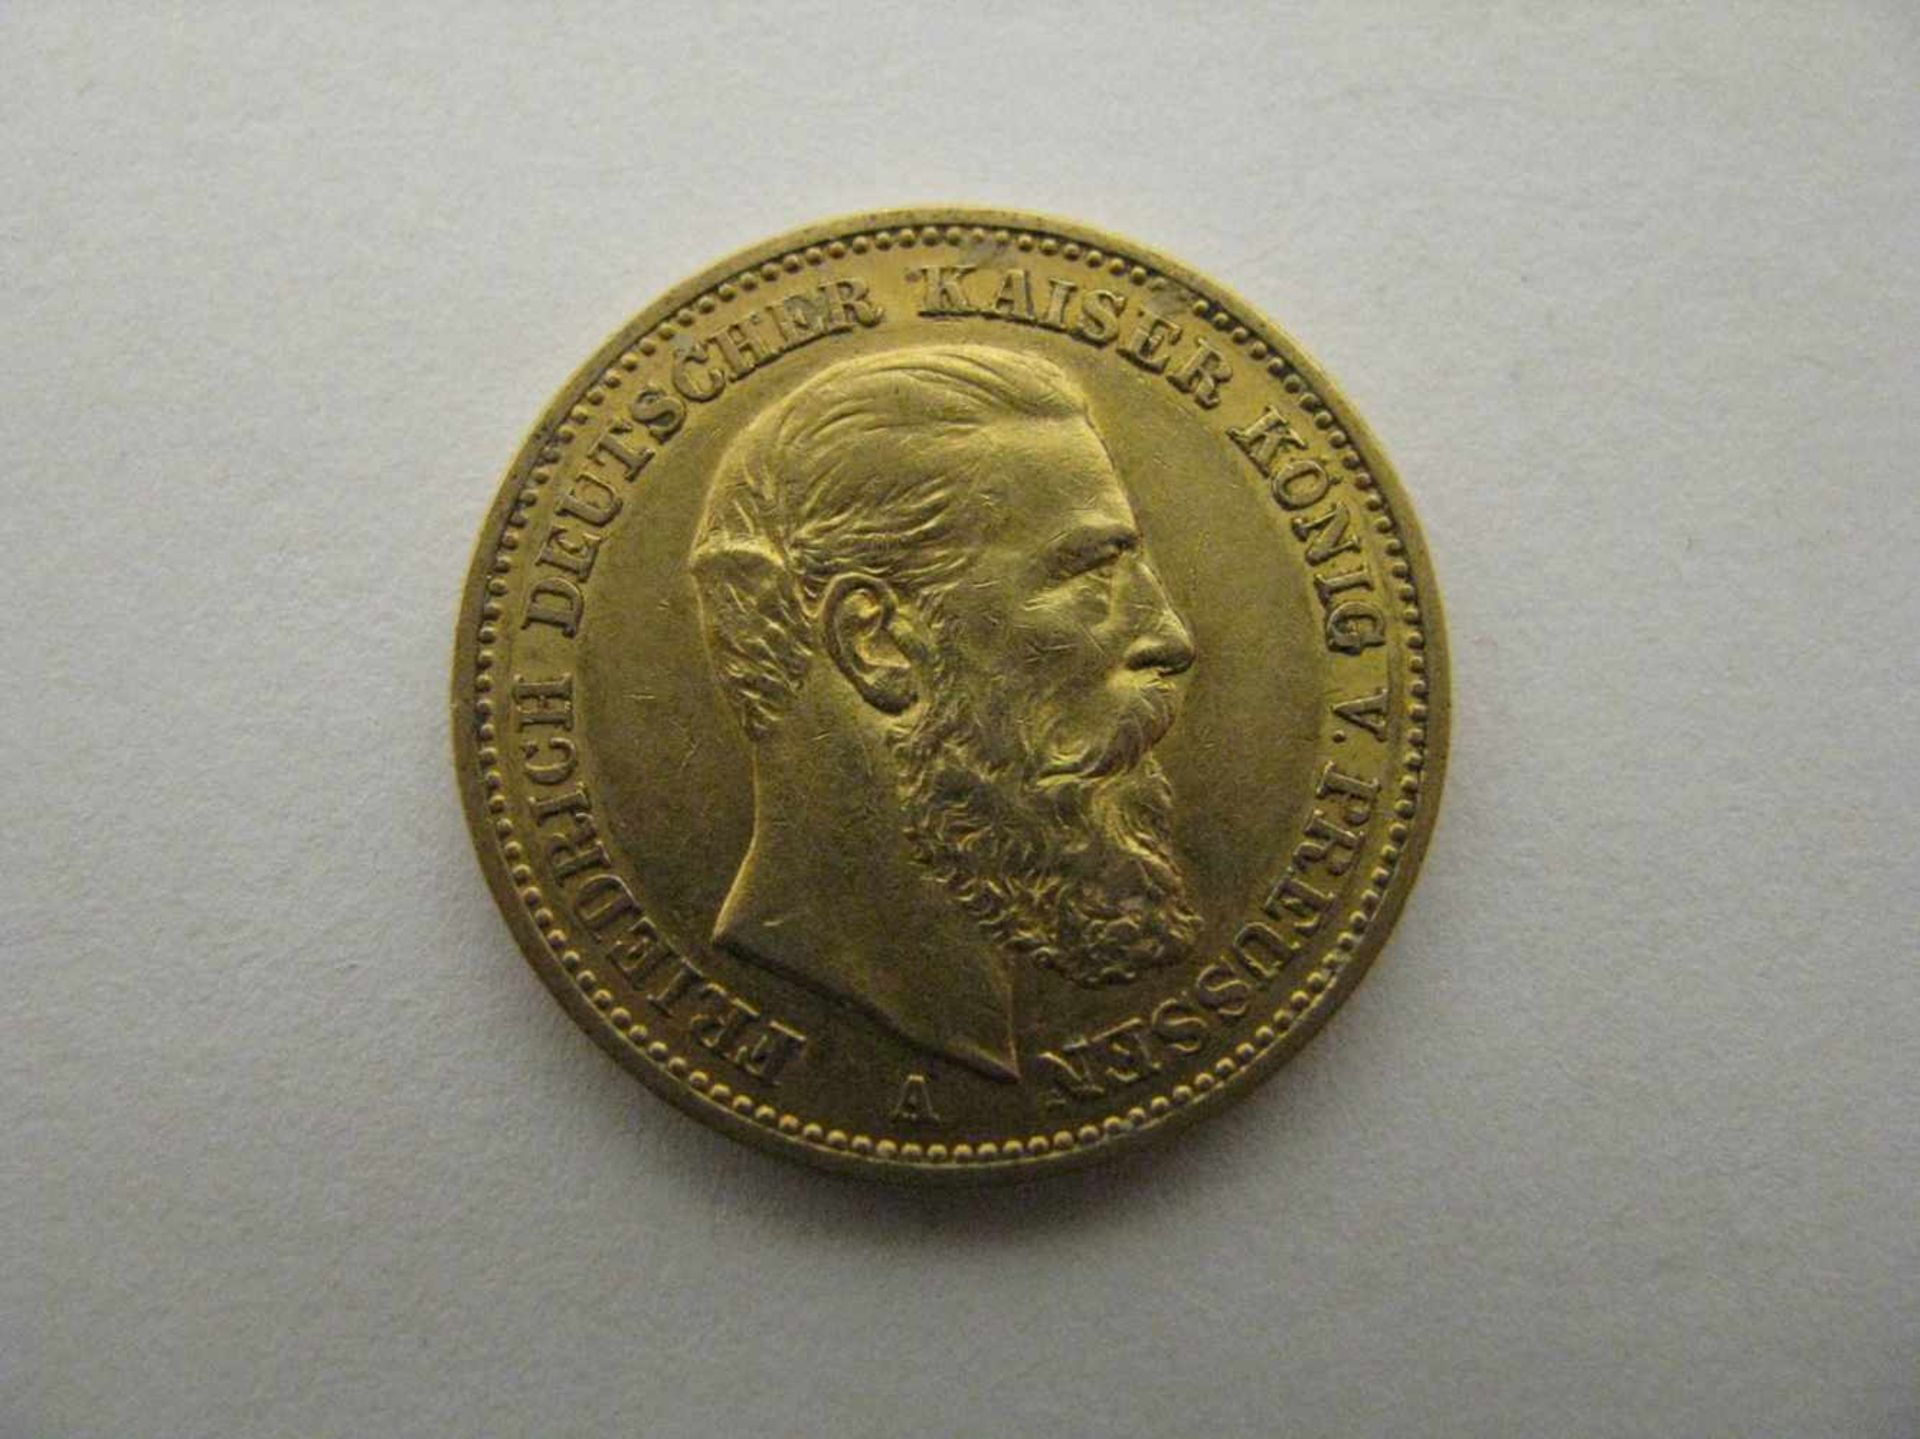 Goldmünze, 20 Mark, Friedrich Kaiser von Preußen, Deutsches Reich 1888, 7,94 g, d 2,2 cm.- - -19.